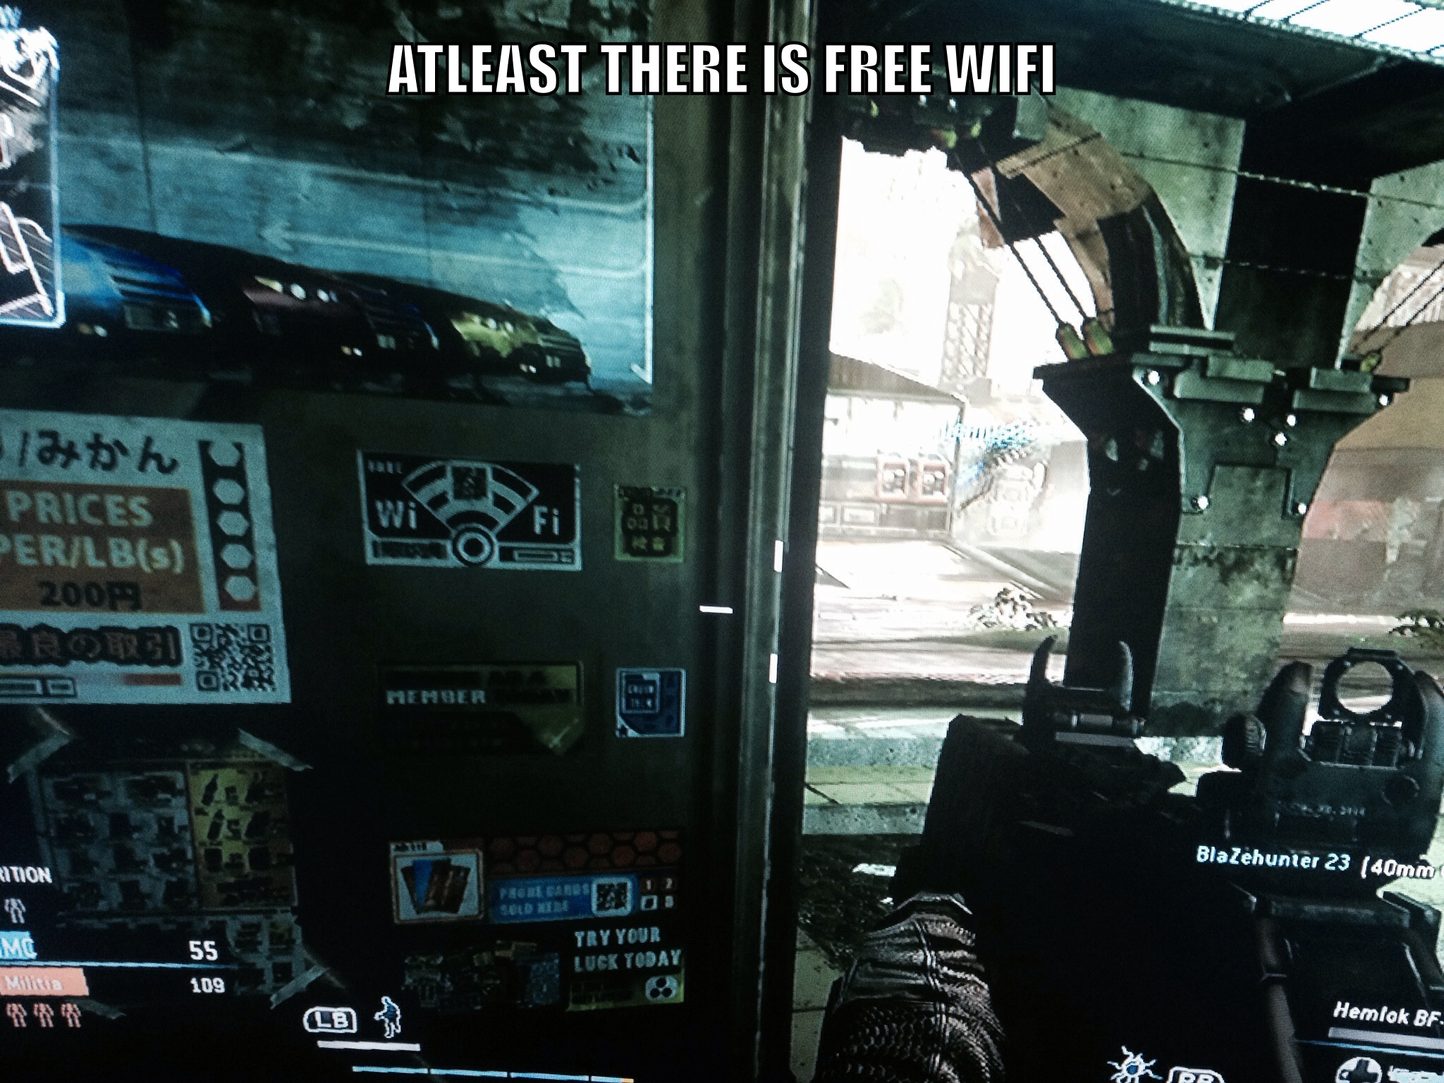 Free wifi is the best wifi - meme